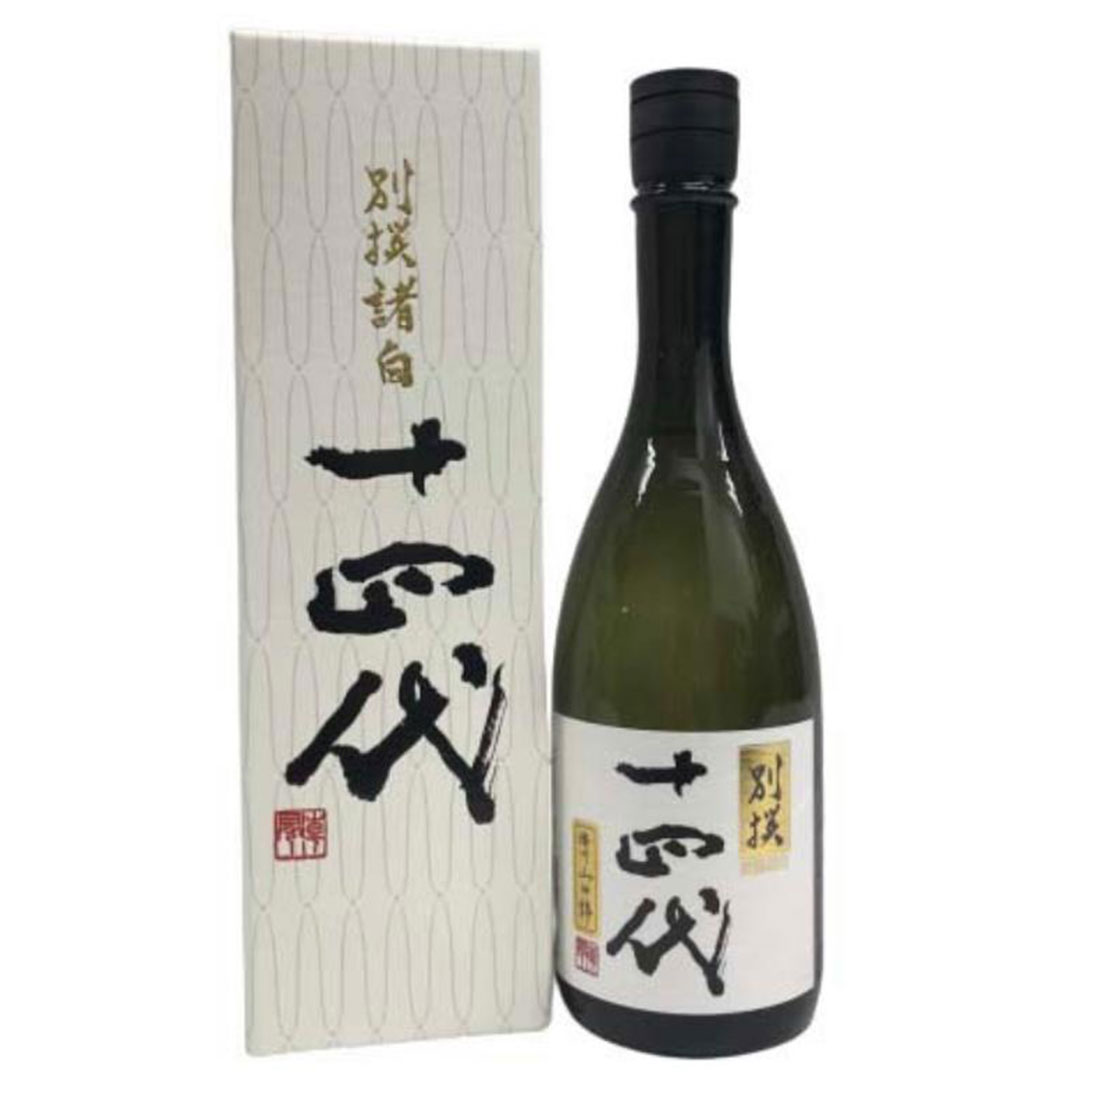 Bottle-Jyuyondai-Bessen-Morohaku-Sake